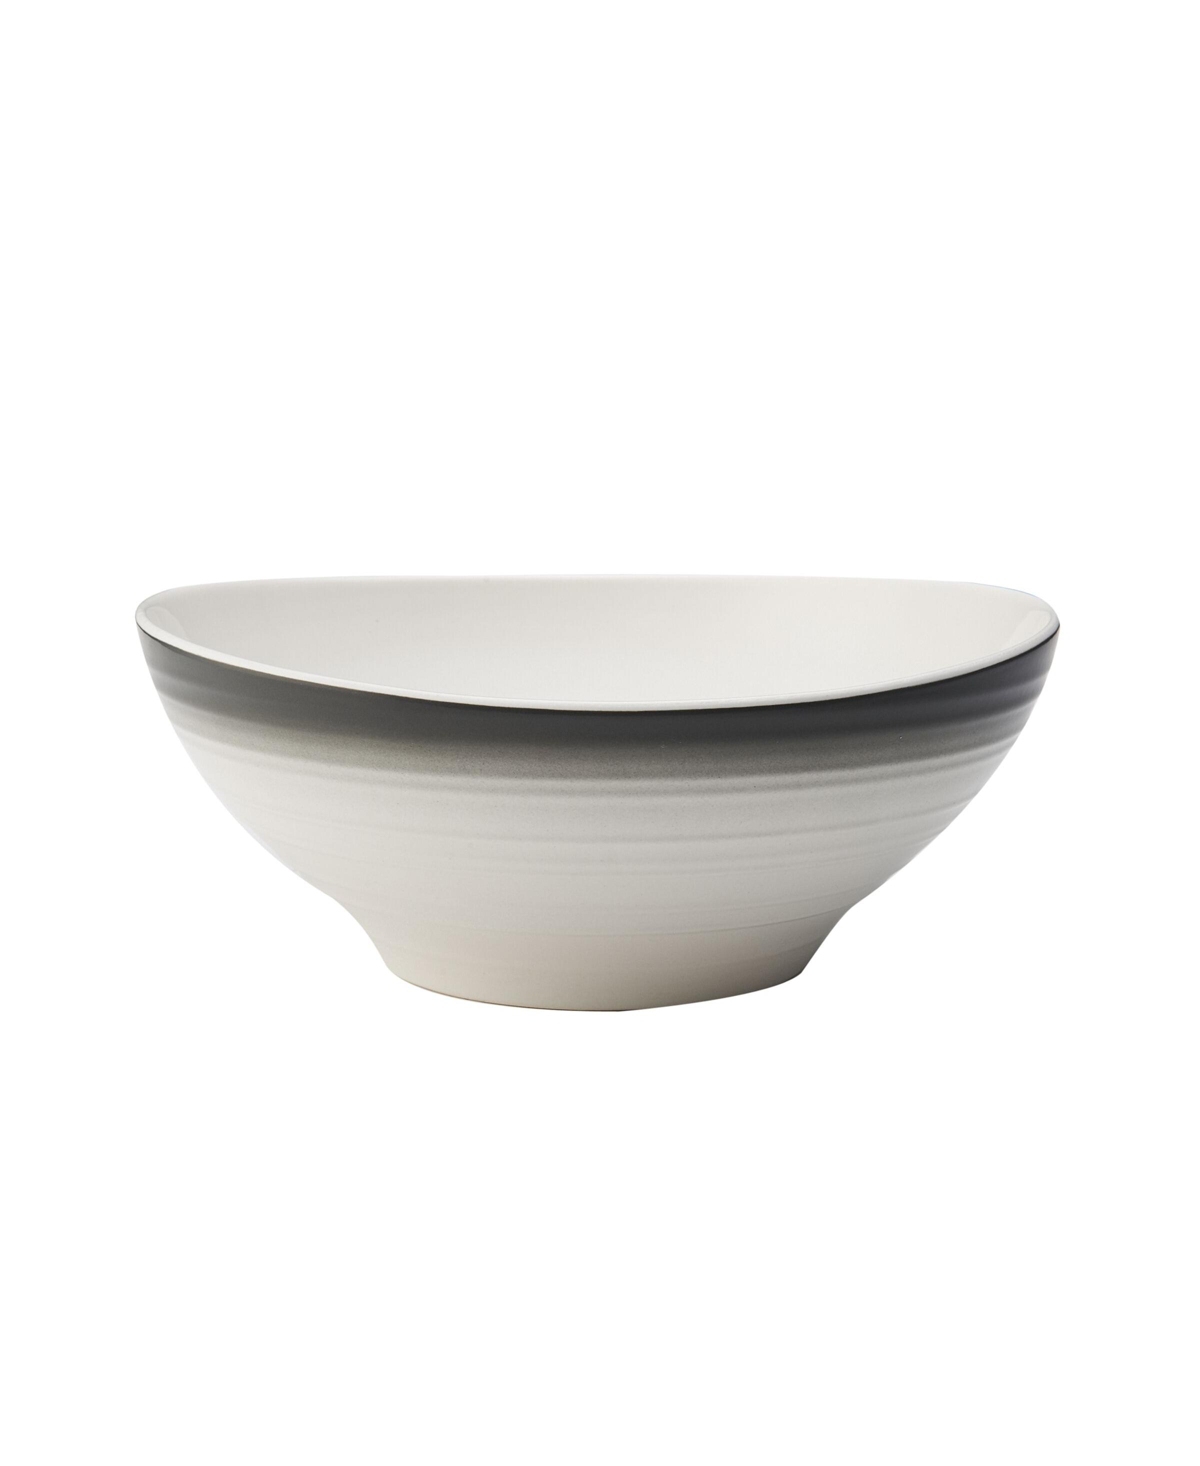 Swirl 9.75" Vegetable Bowl - Gray